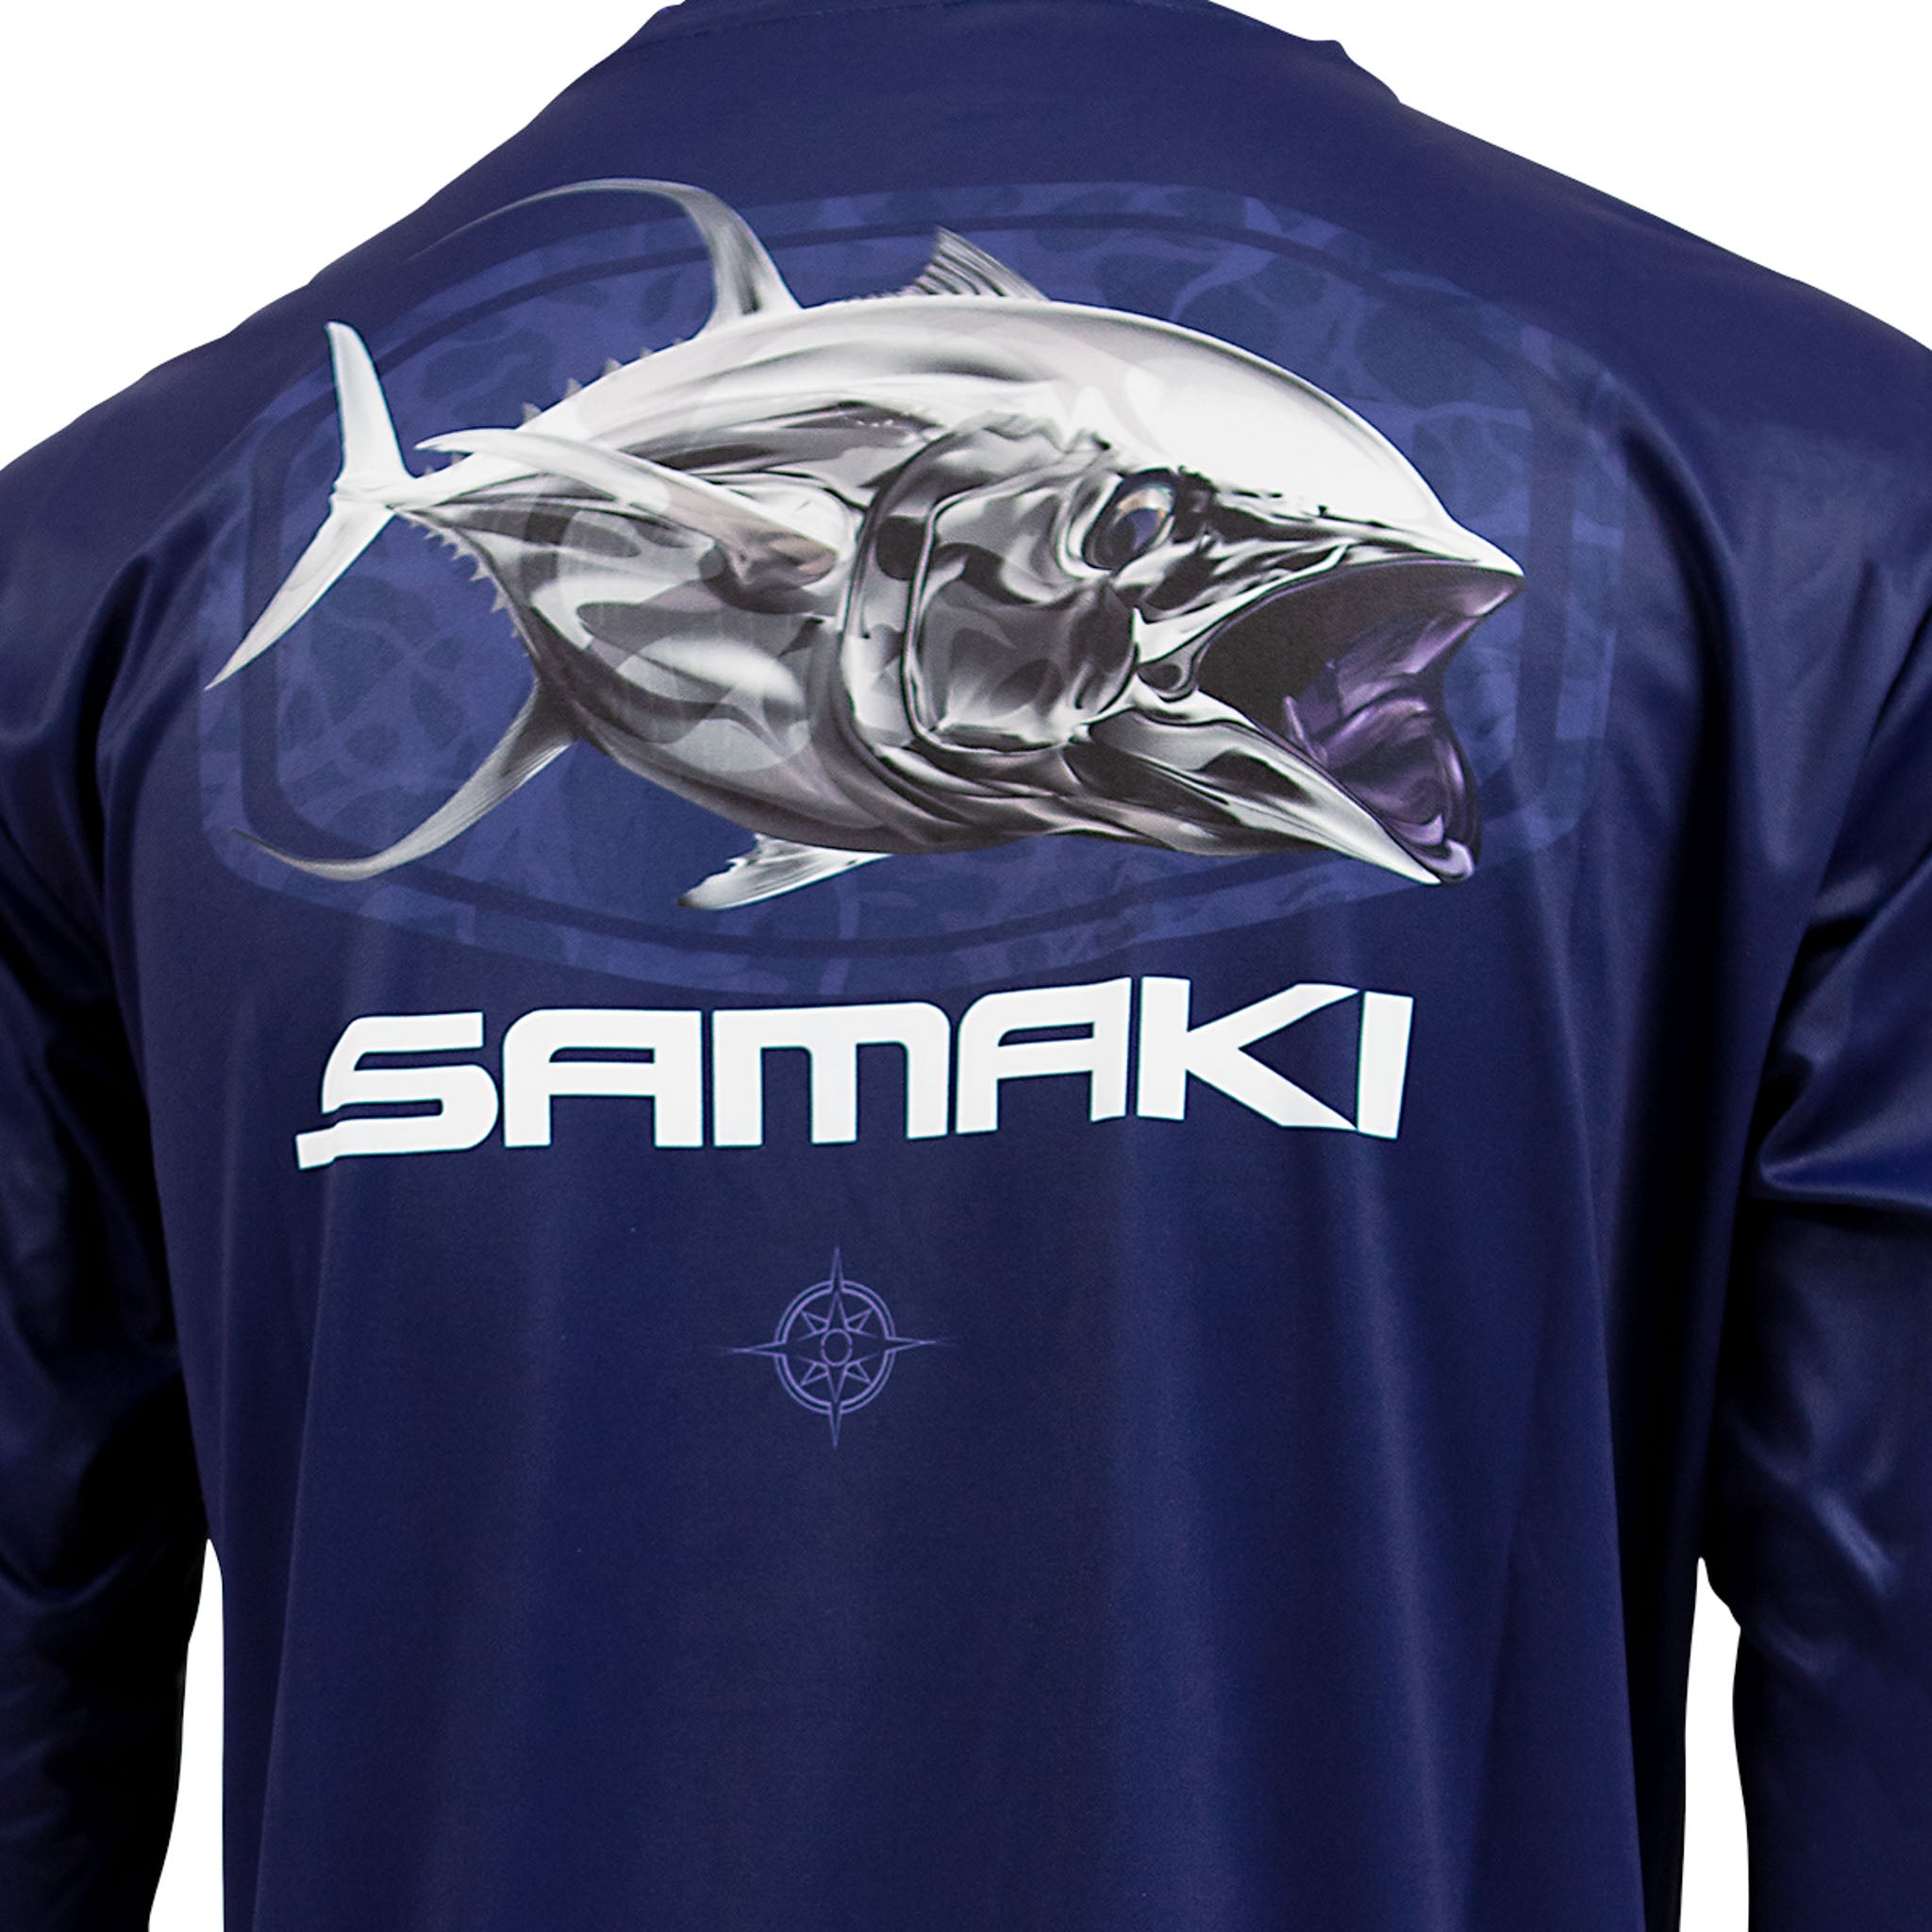 Tuna Performance Shirt